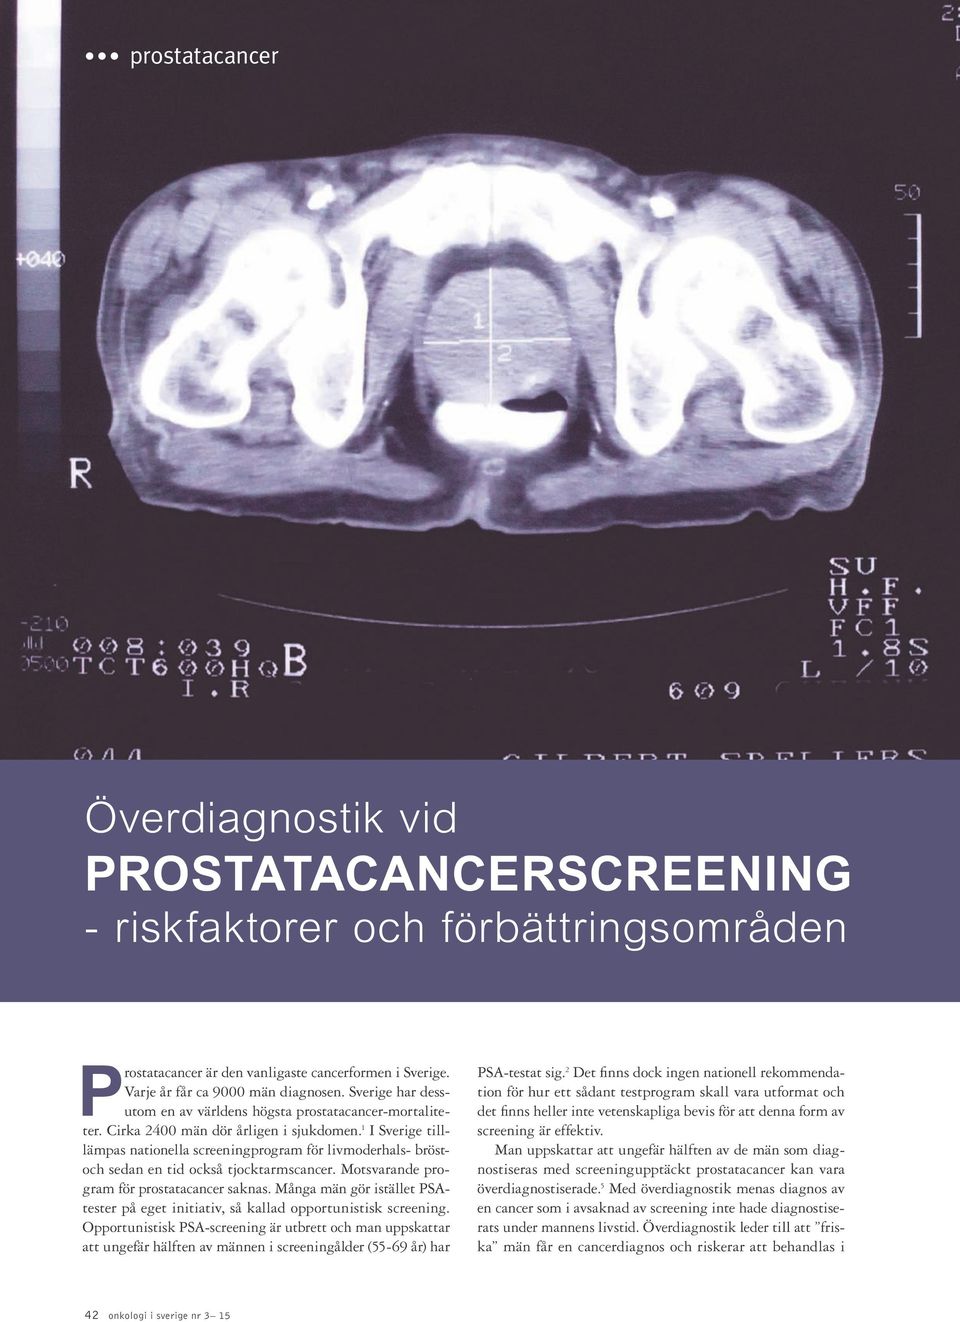 1 I Sverige tilllämpas nationella screeningprogram för livmoderhals- bröstoch sedan en tid också tjocktarmscancer. Motsvarande program för saknas.